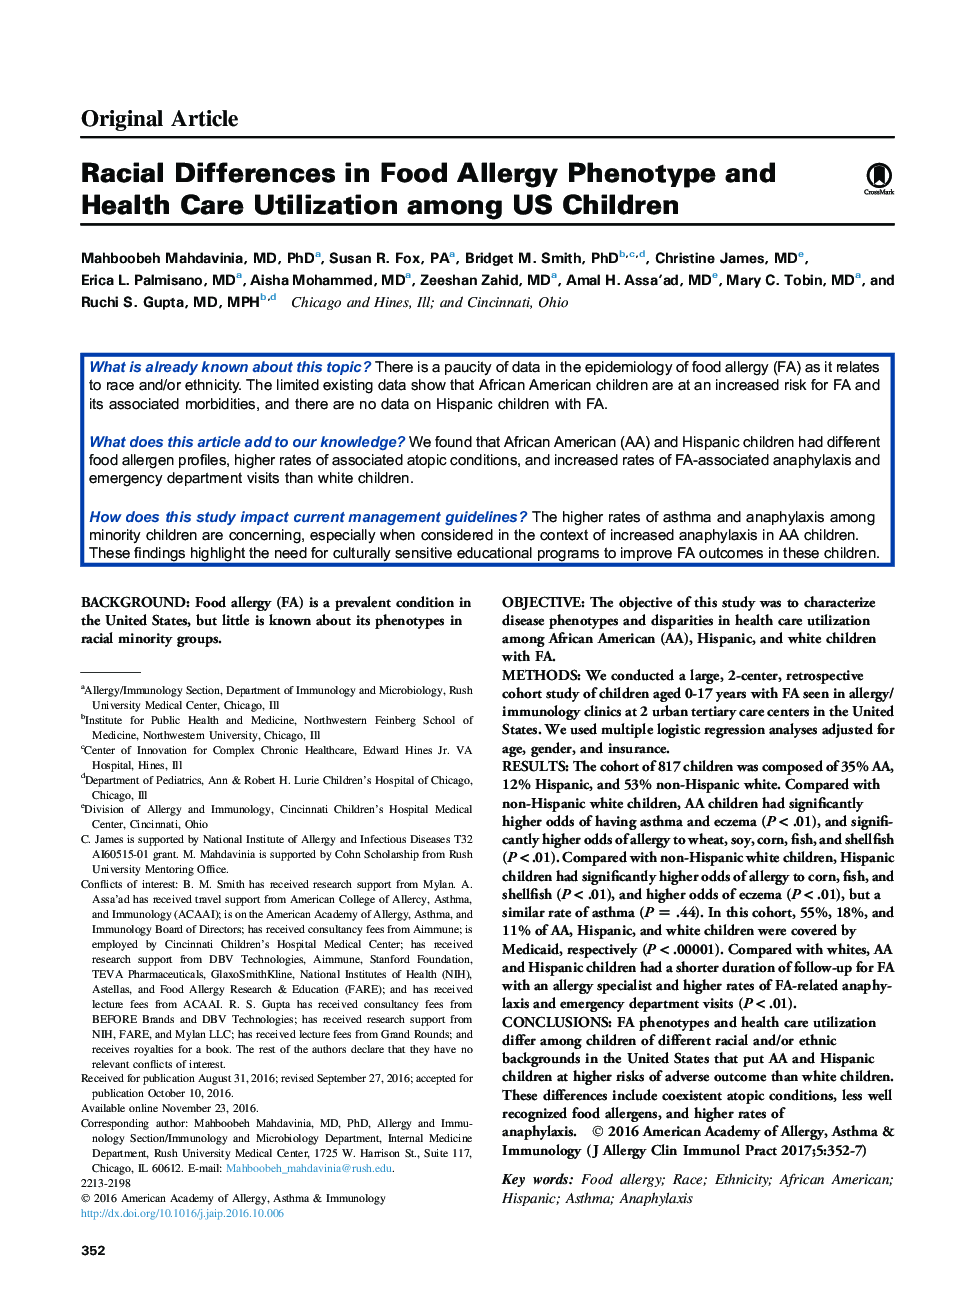 اختلافات نژادی در استفاده از فنوتیپ آلرژی غذایی و مراقبت های بهداشتی در میان کودکان ایالات متحده 